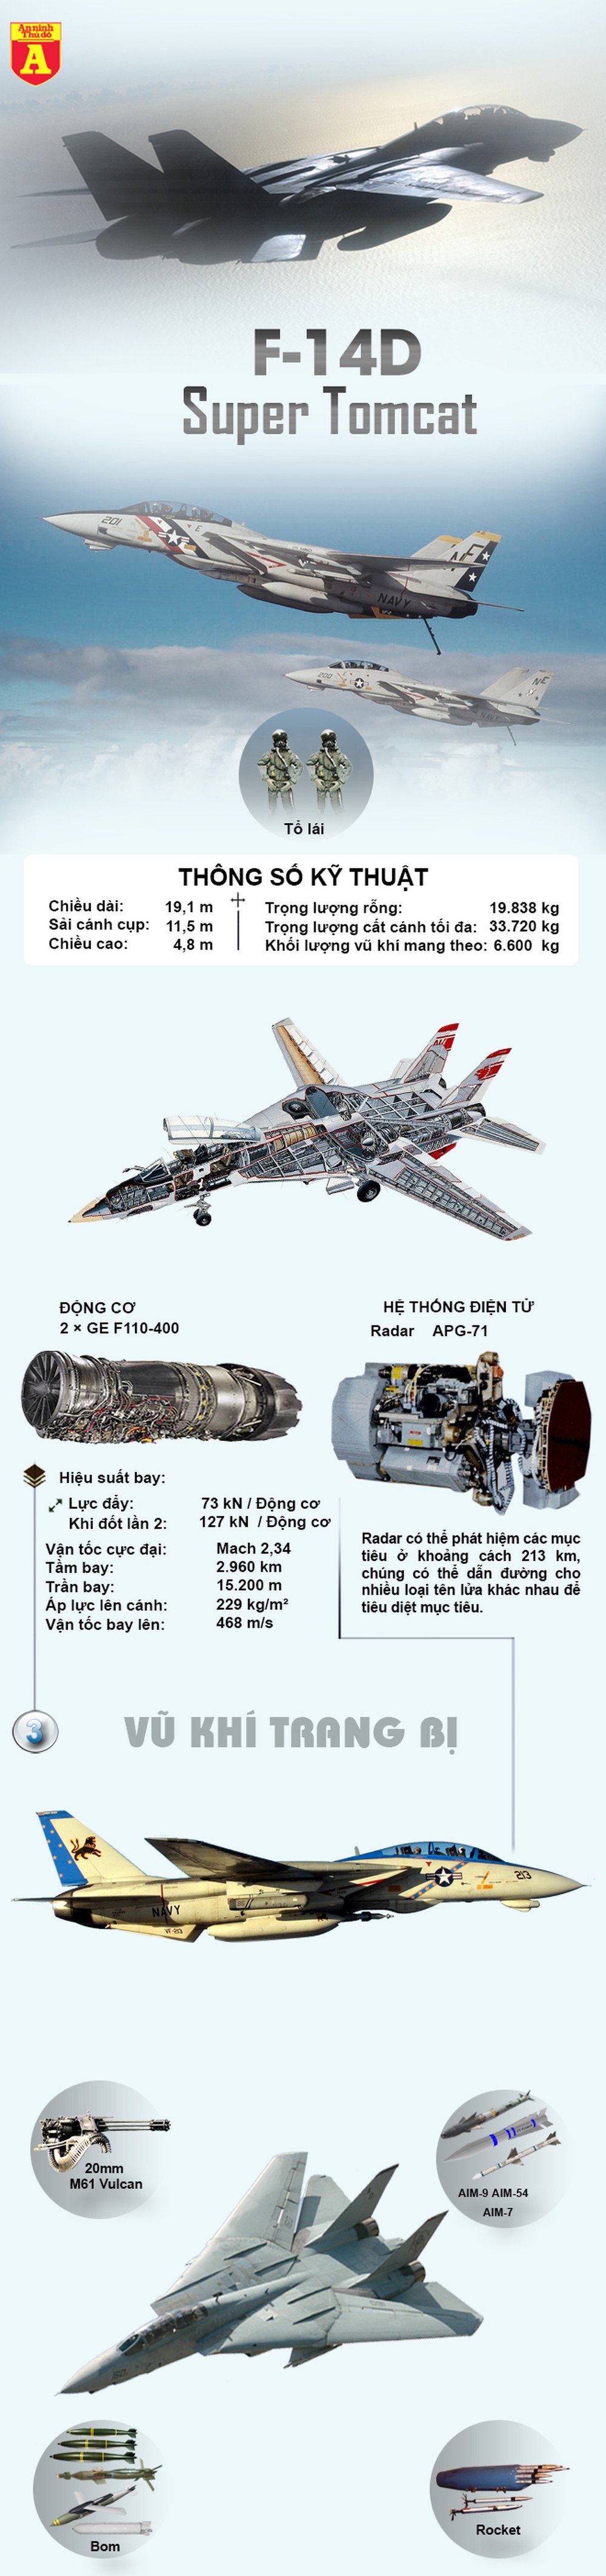 [Infographics] Mỹ thẳng tay băm nát F-14 để khỏi lọt vào tay Iran  - Ảnh 1